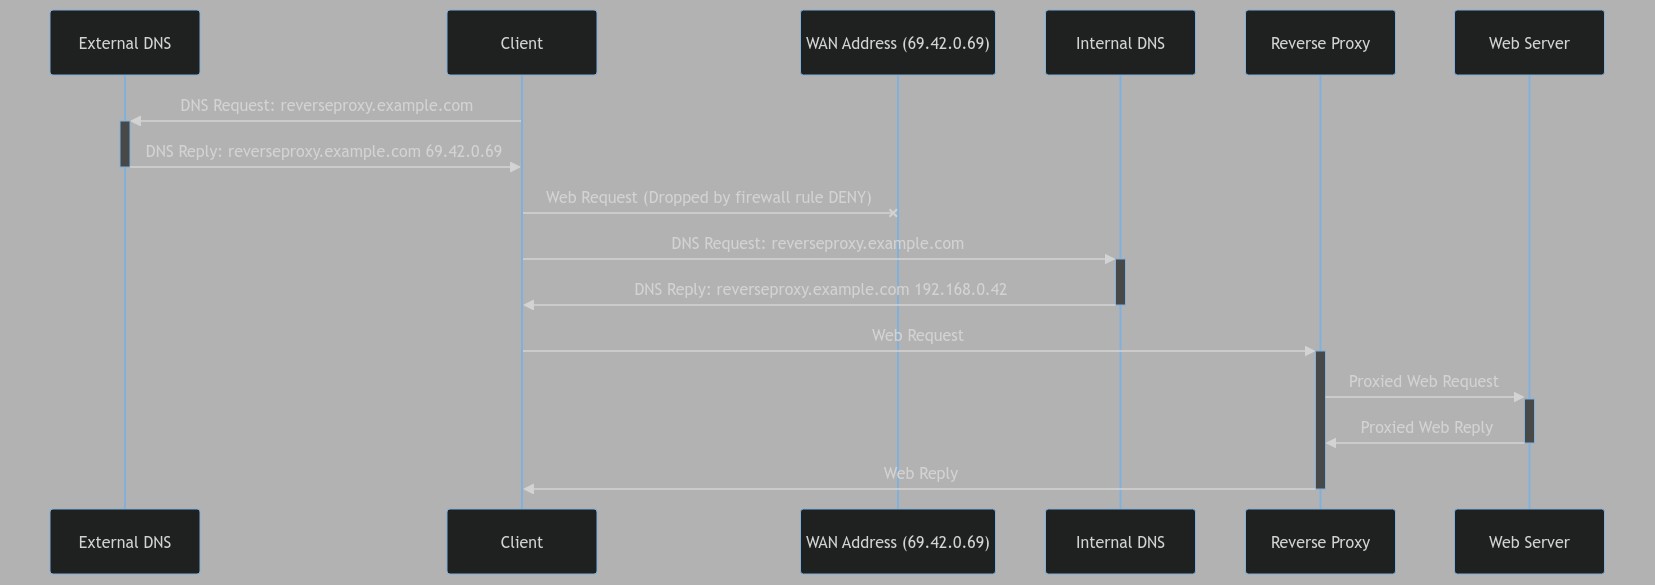 Sequence Diagram - Split-Horizon DNS